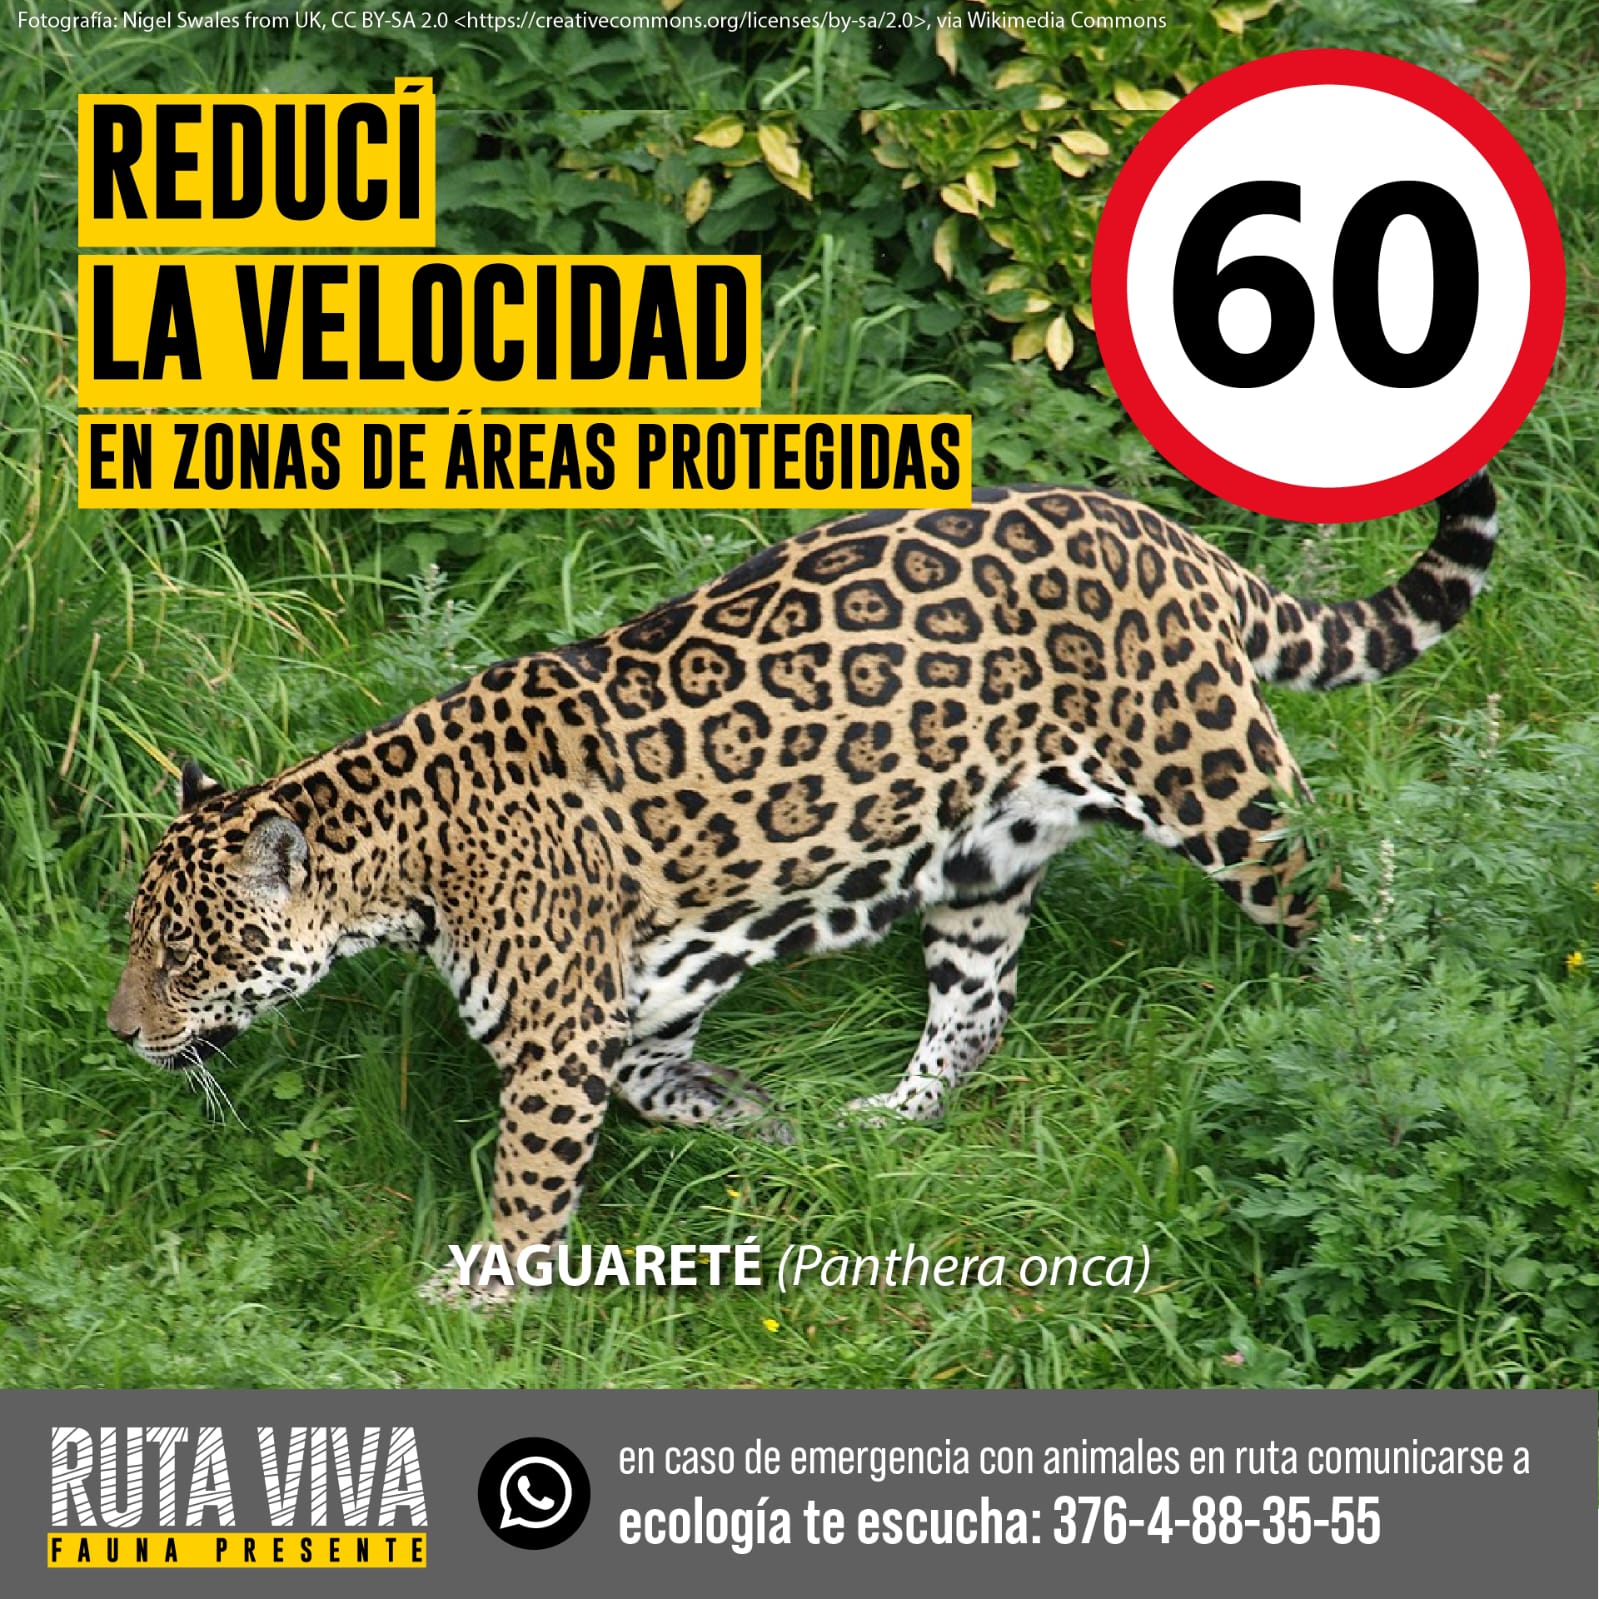 Según la Fundación Vida Silvestre, en Argentina quedan menos de 250 yaguaretés